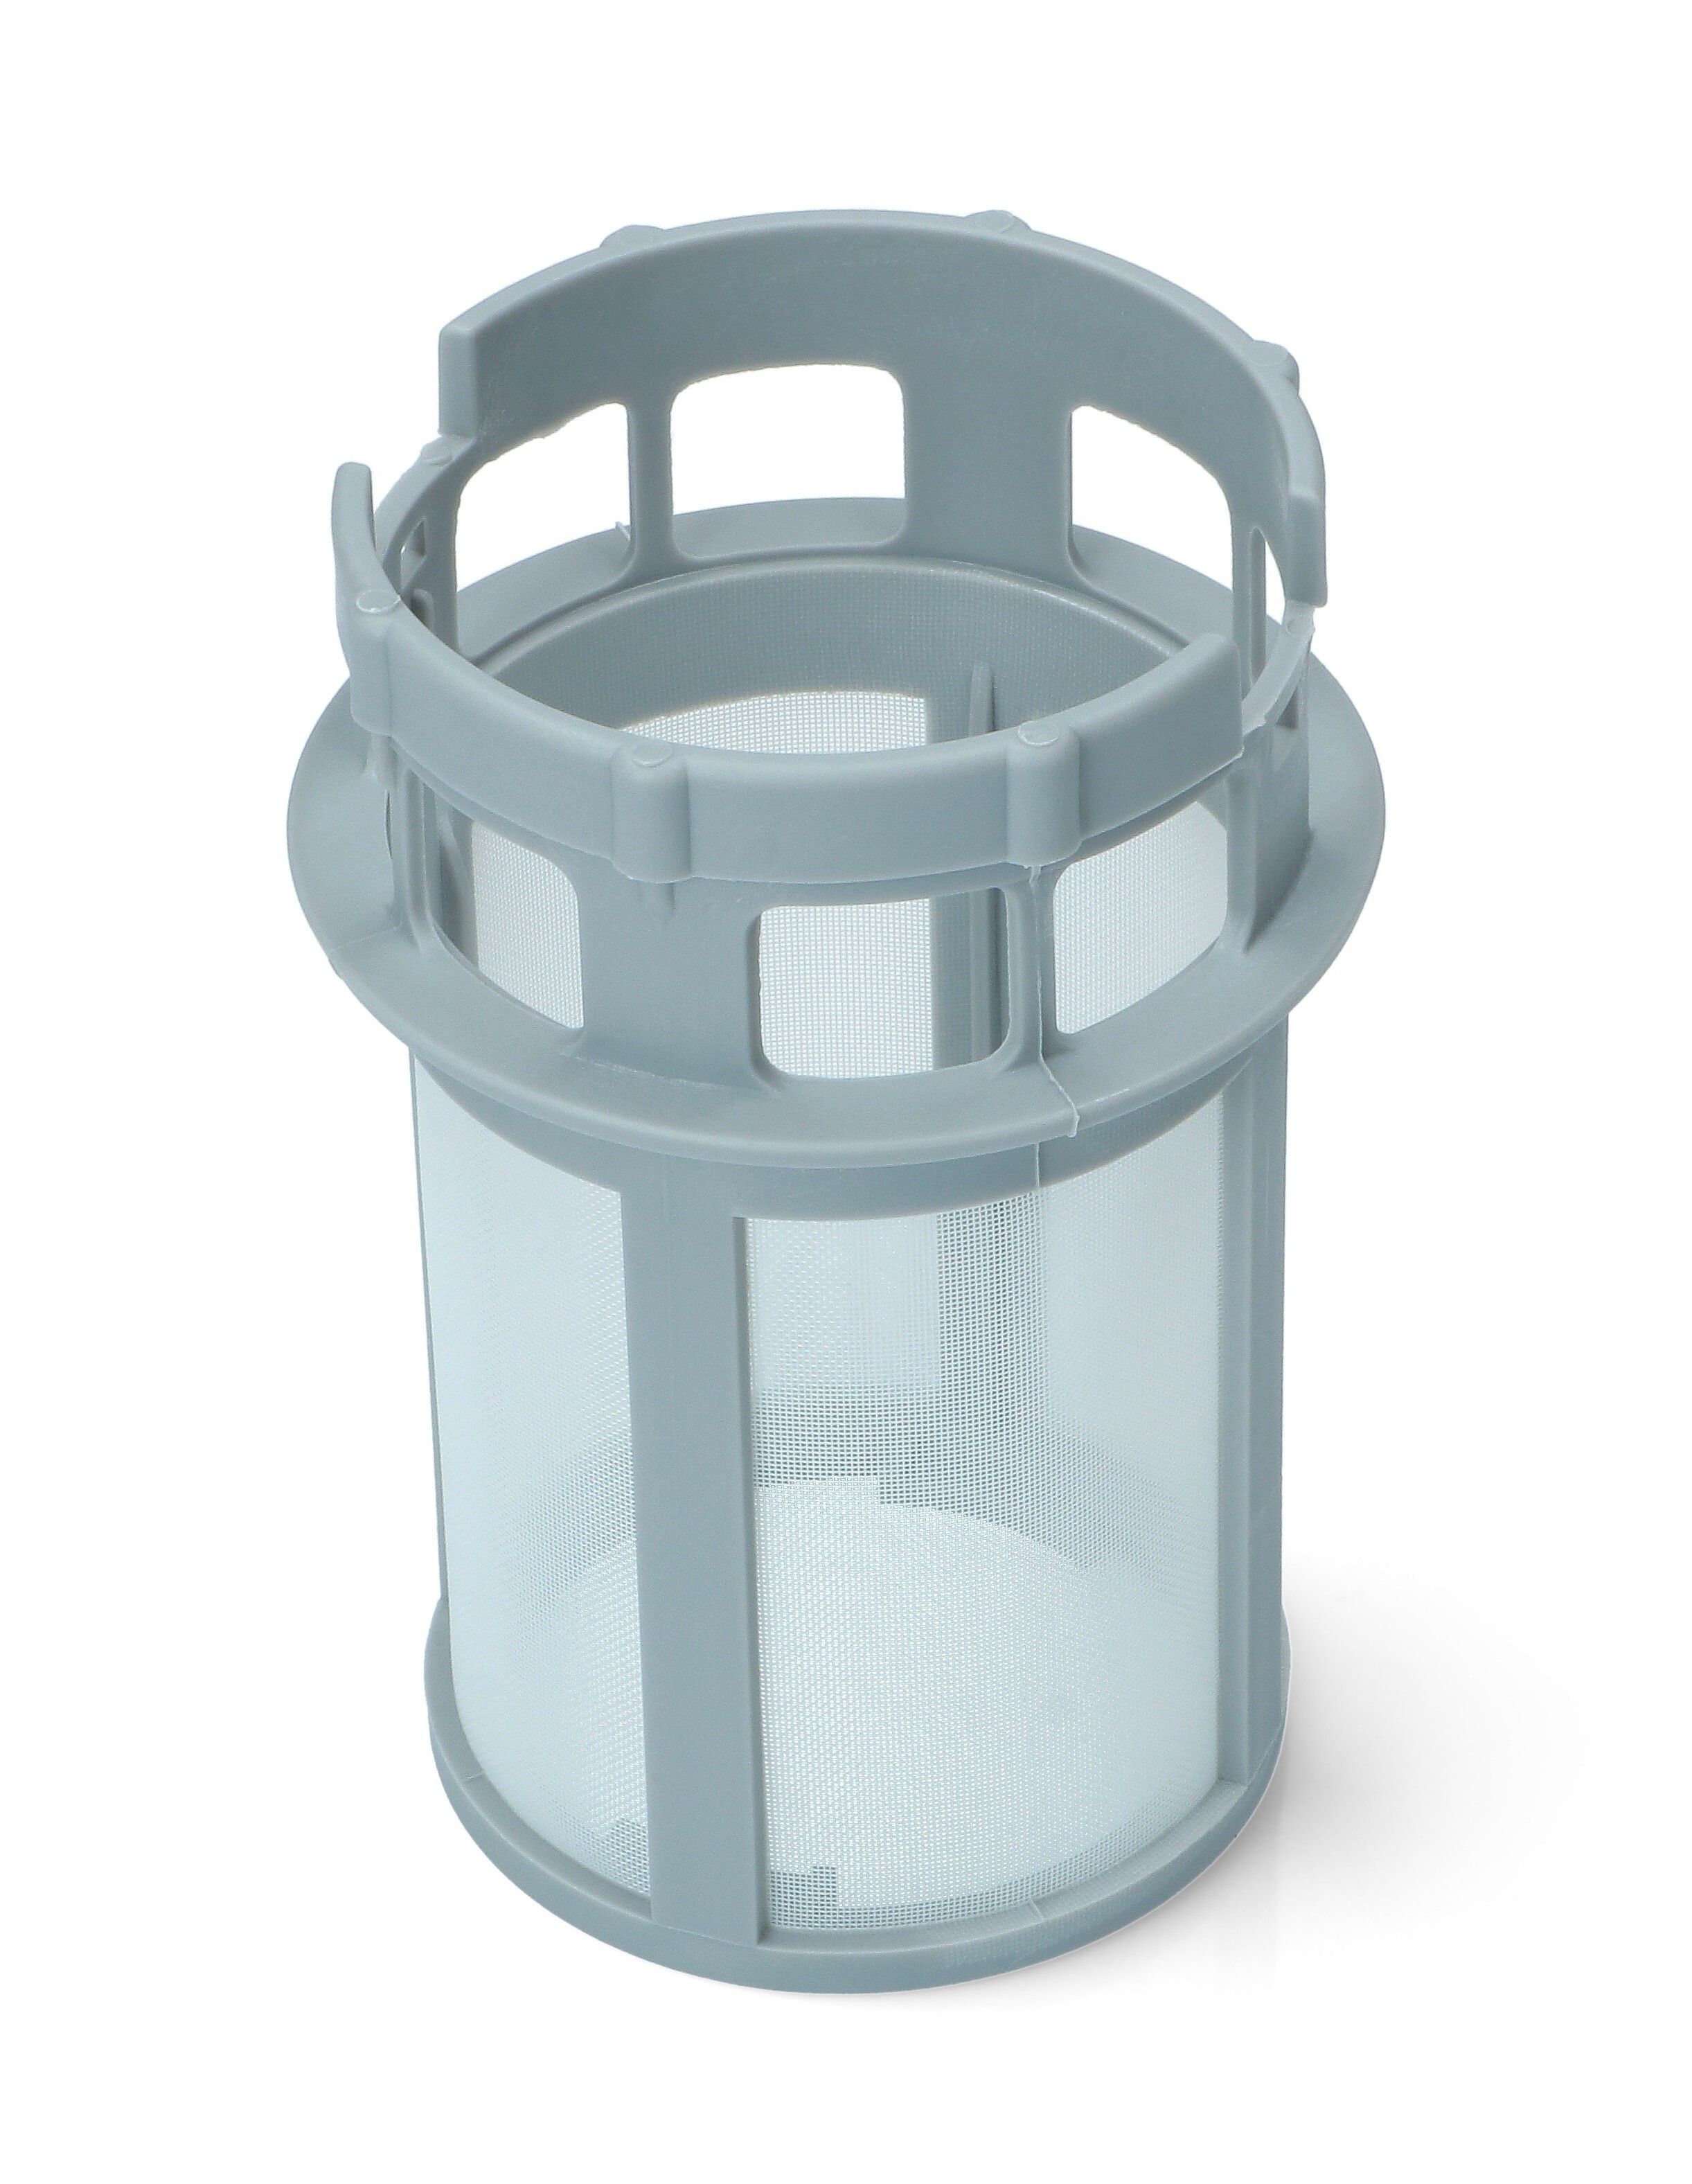 Сливной фильтр к посудомоечной машине Хотпоинт Аристон (Hotpoint Ariston) Индезит (Indesit фильтр сливного насоса skl ws061